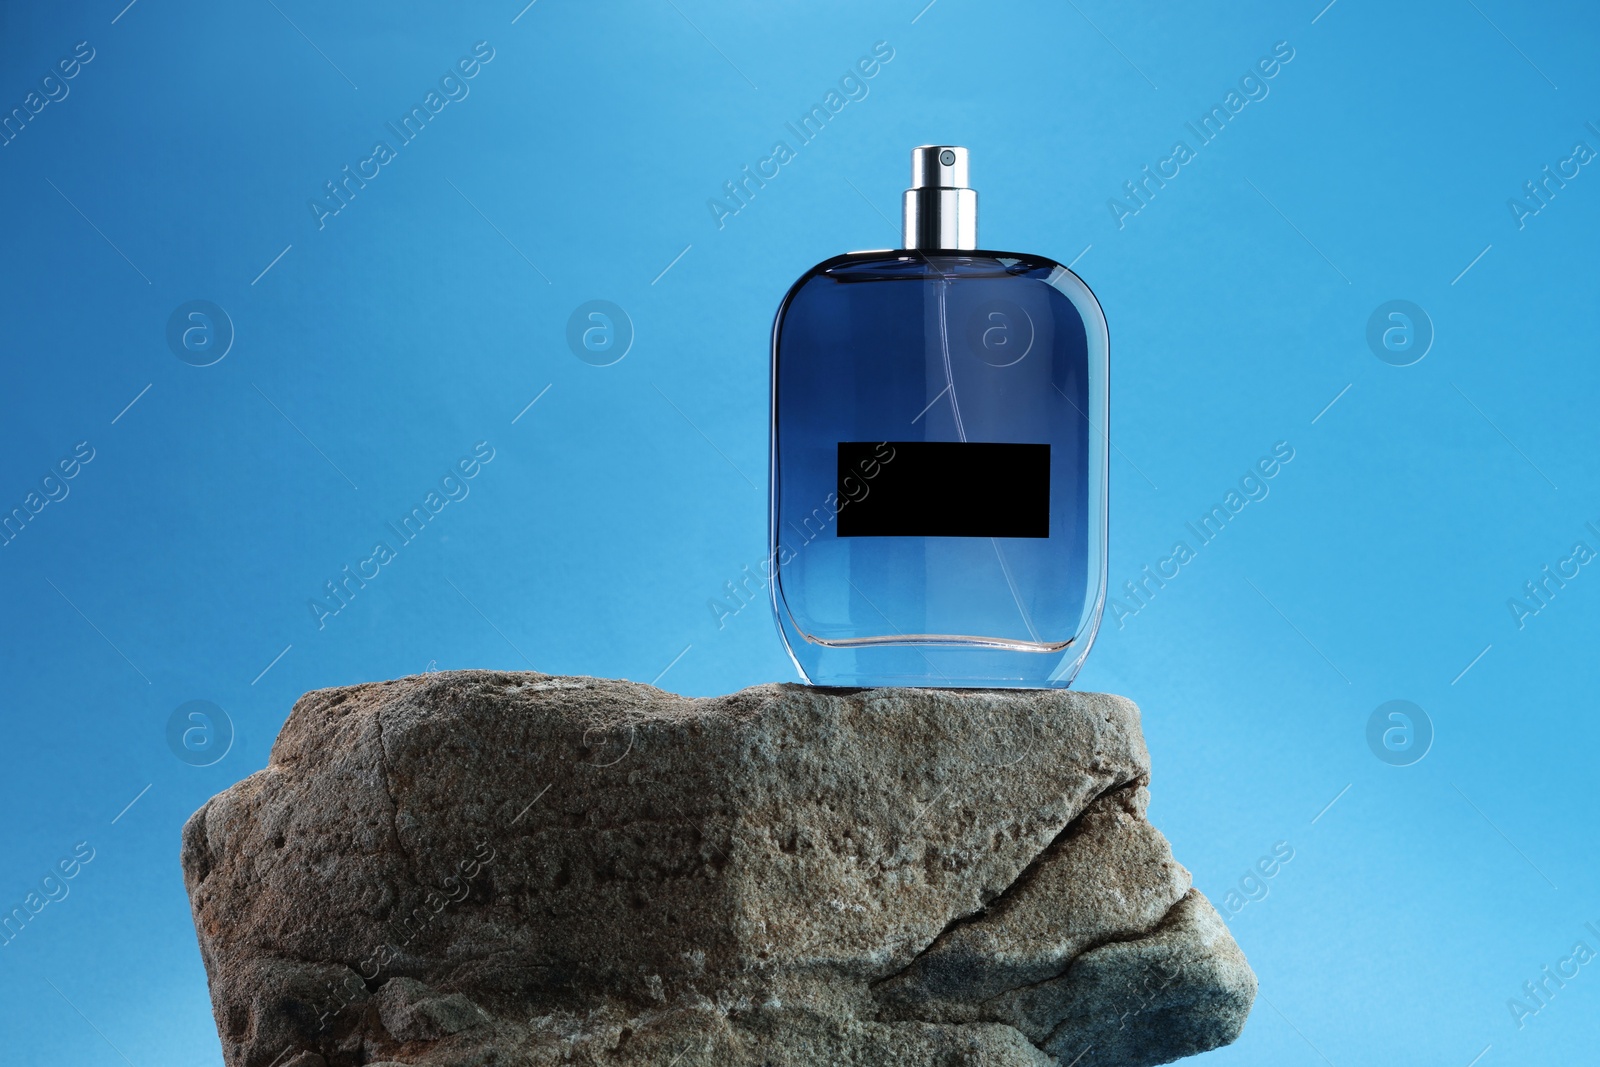 Photo of Stylish presentation of luxury men`s perfume on stone against light blue background